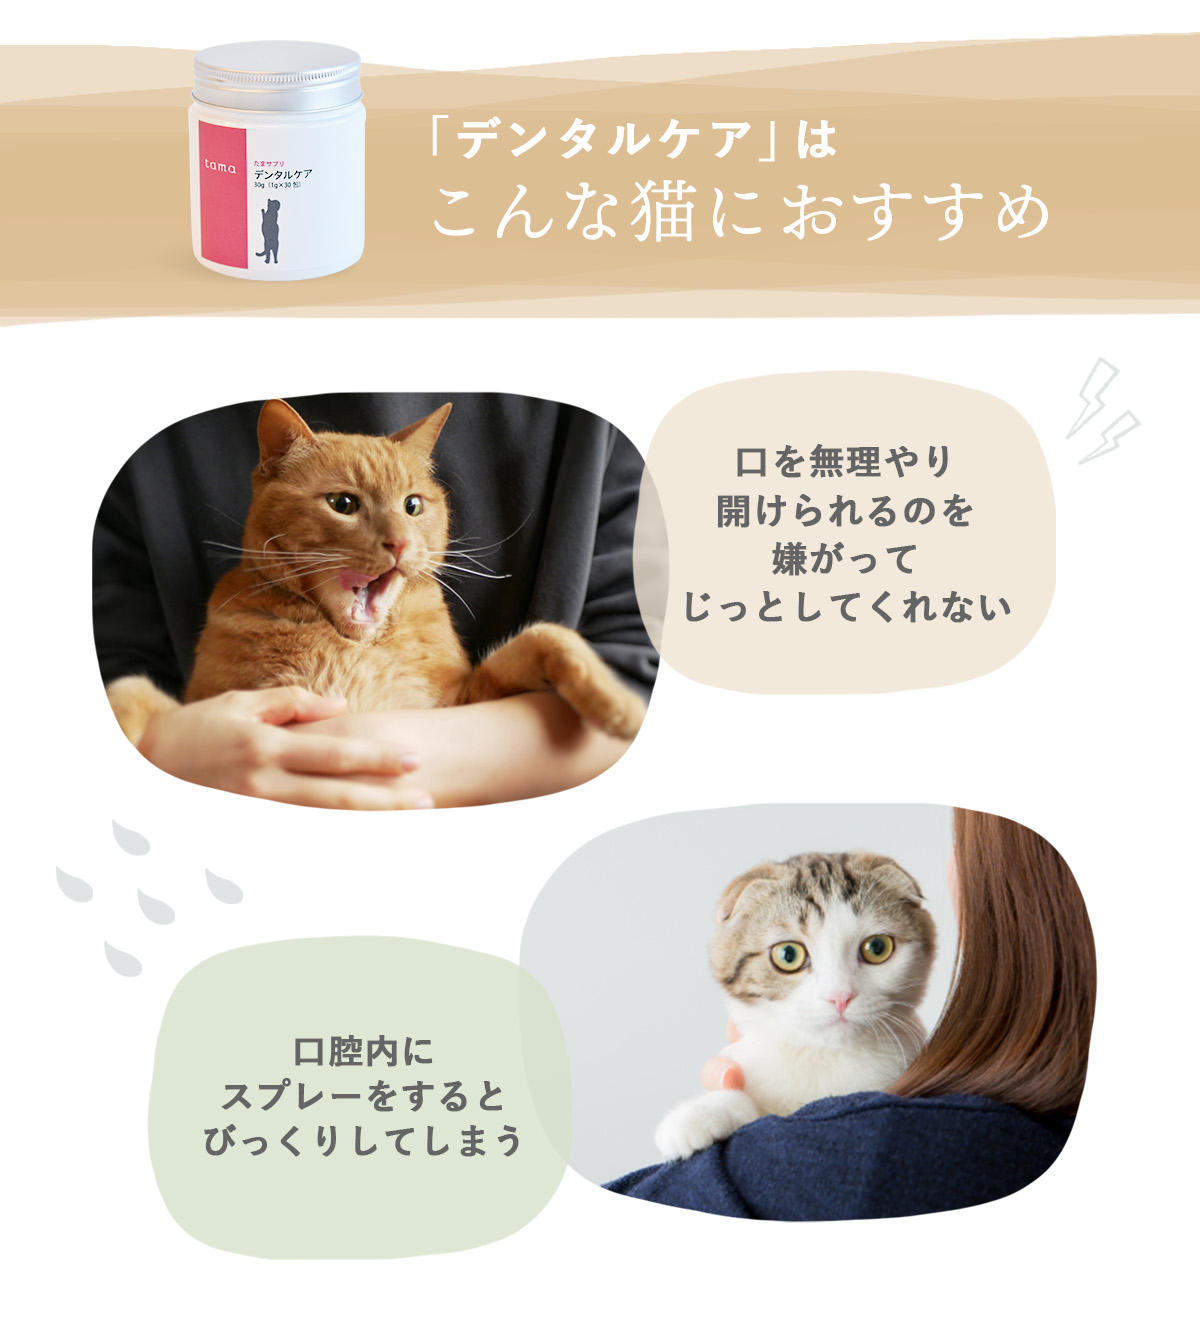 歯磨きを嫌がる猫、スプレータイプだとビックリする猫の口腔ケアにお役立てください。